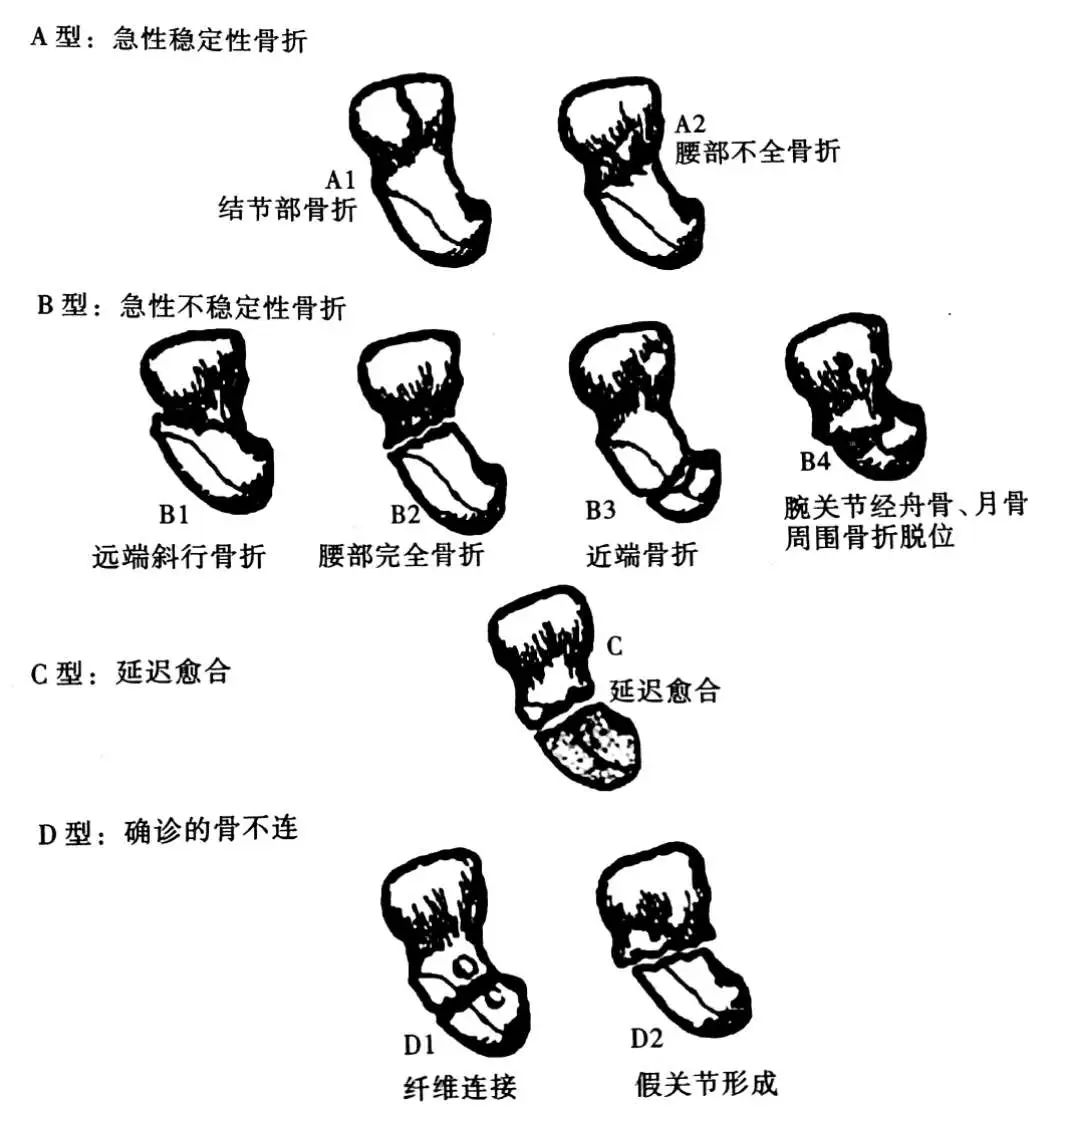 图1-1-36 手骨-人体解剖学与组织生理病理学-医学